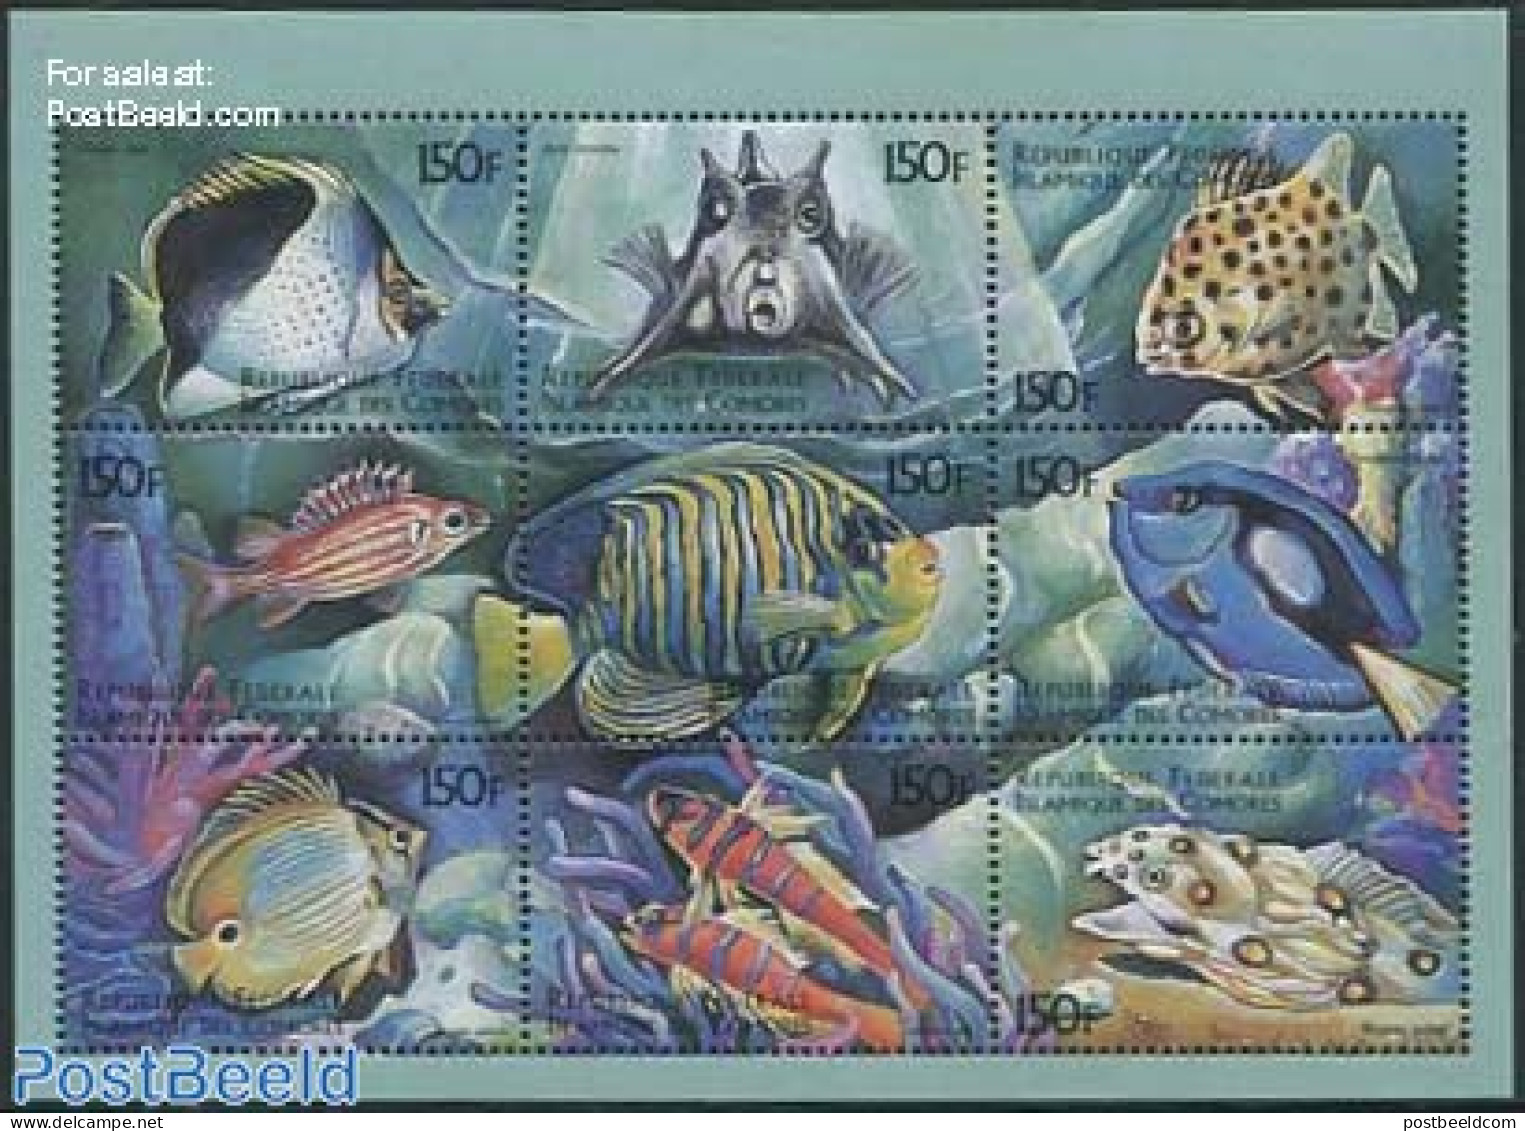 Comoros 1999 Fish 9v M/s, Chaetodon Tinkeri, Mint NH, Nature - Fish - Poissons